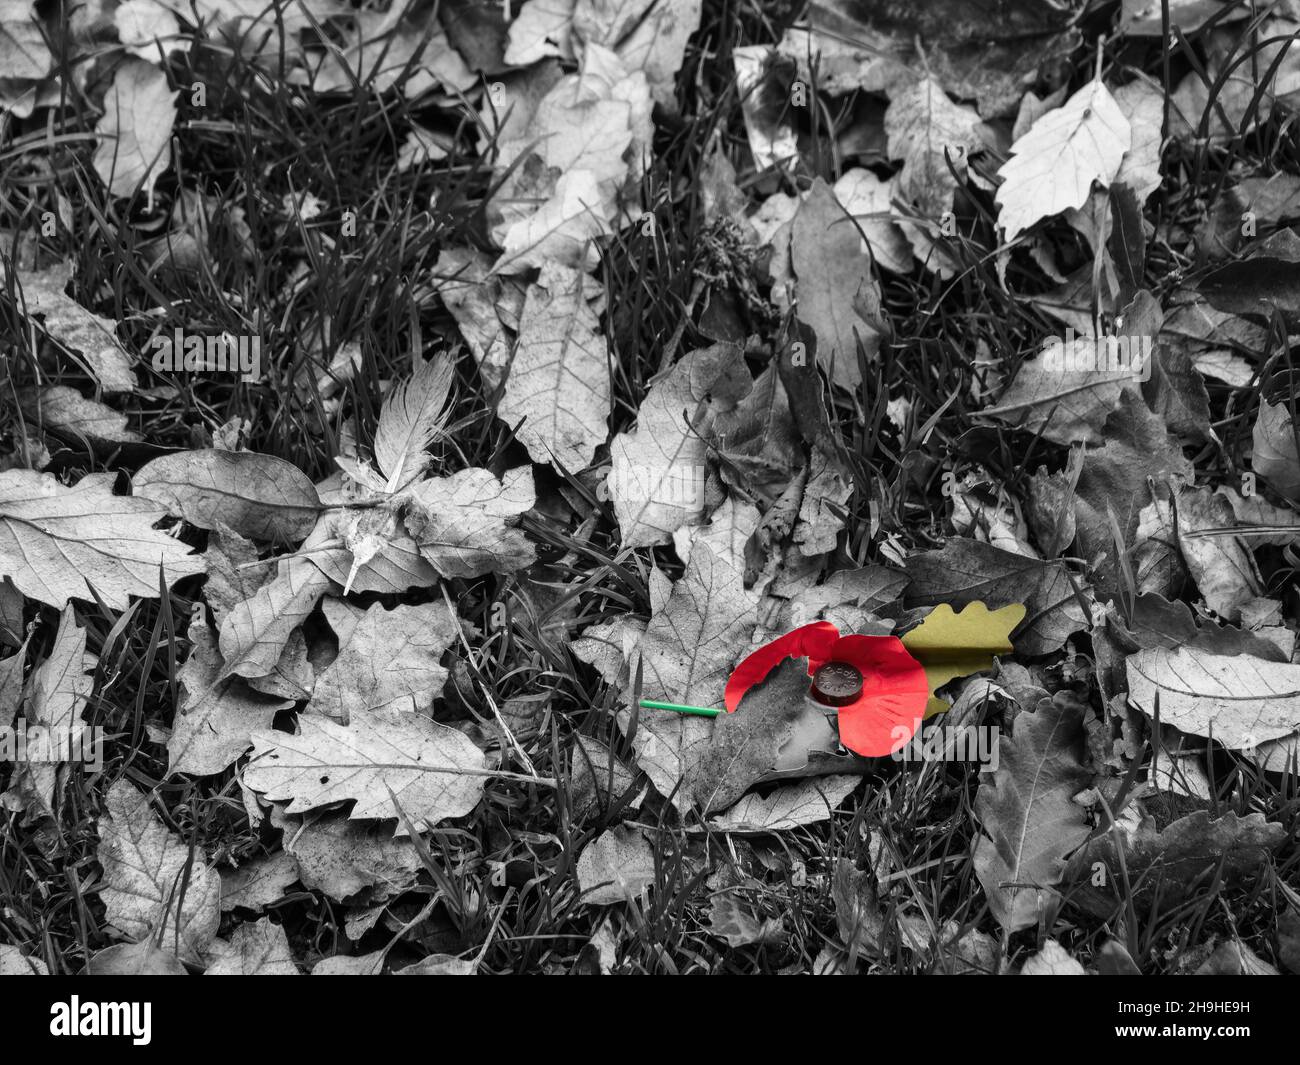 Le pavot du jour du souvenir est tombé parmi les feuilles d'automne.Image triste. Banque D'Images